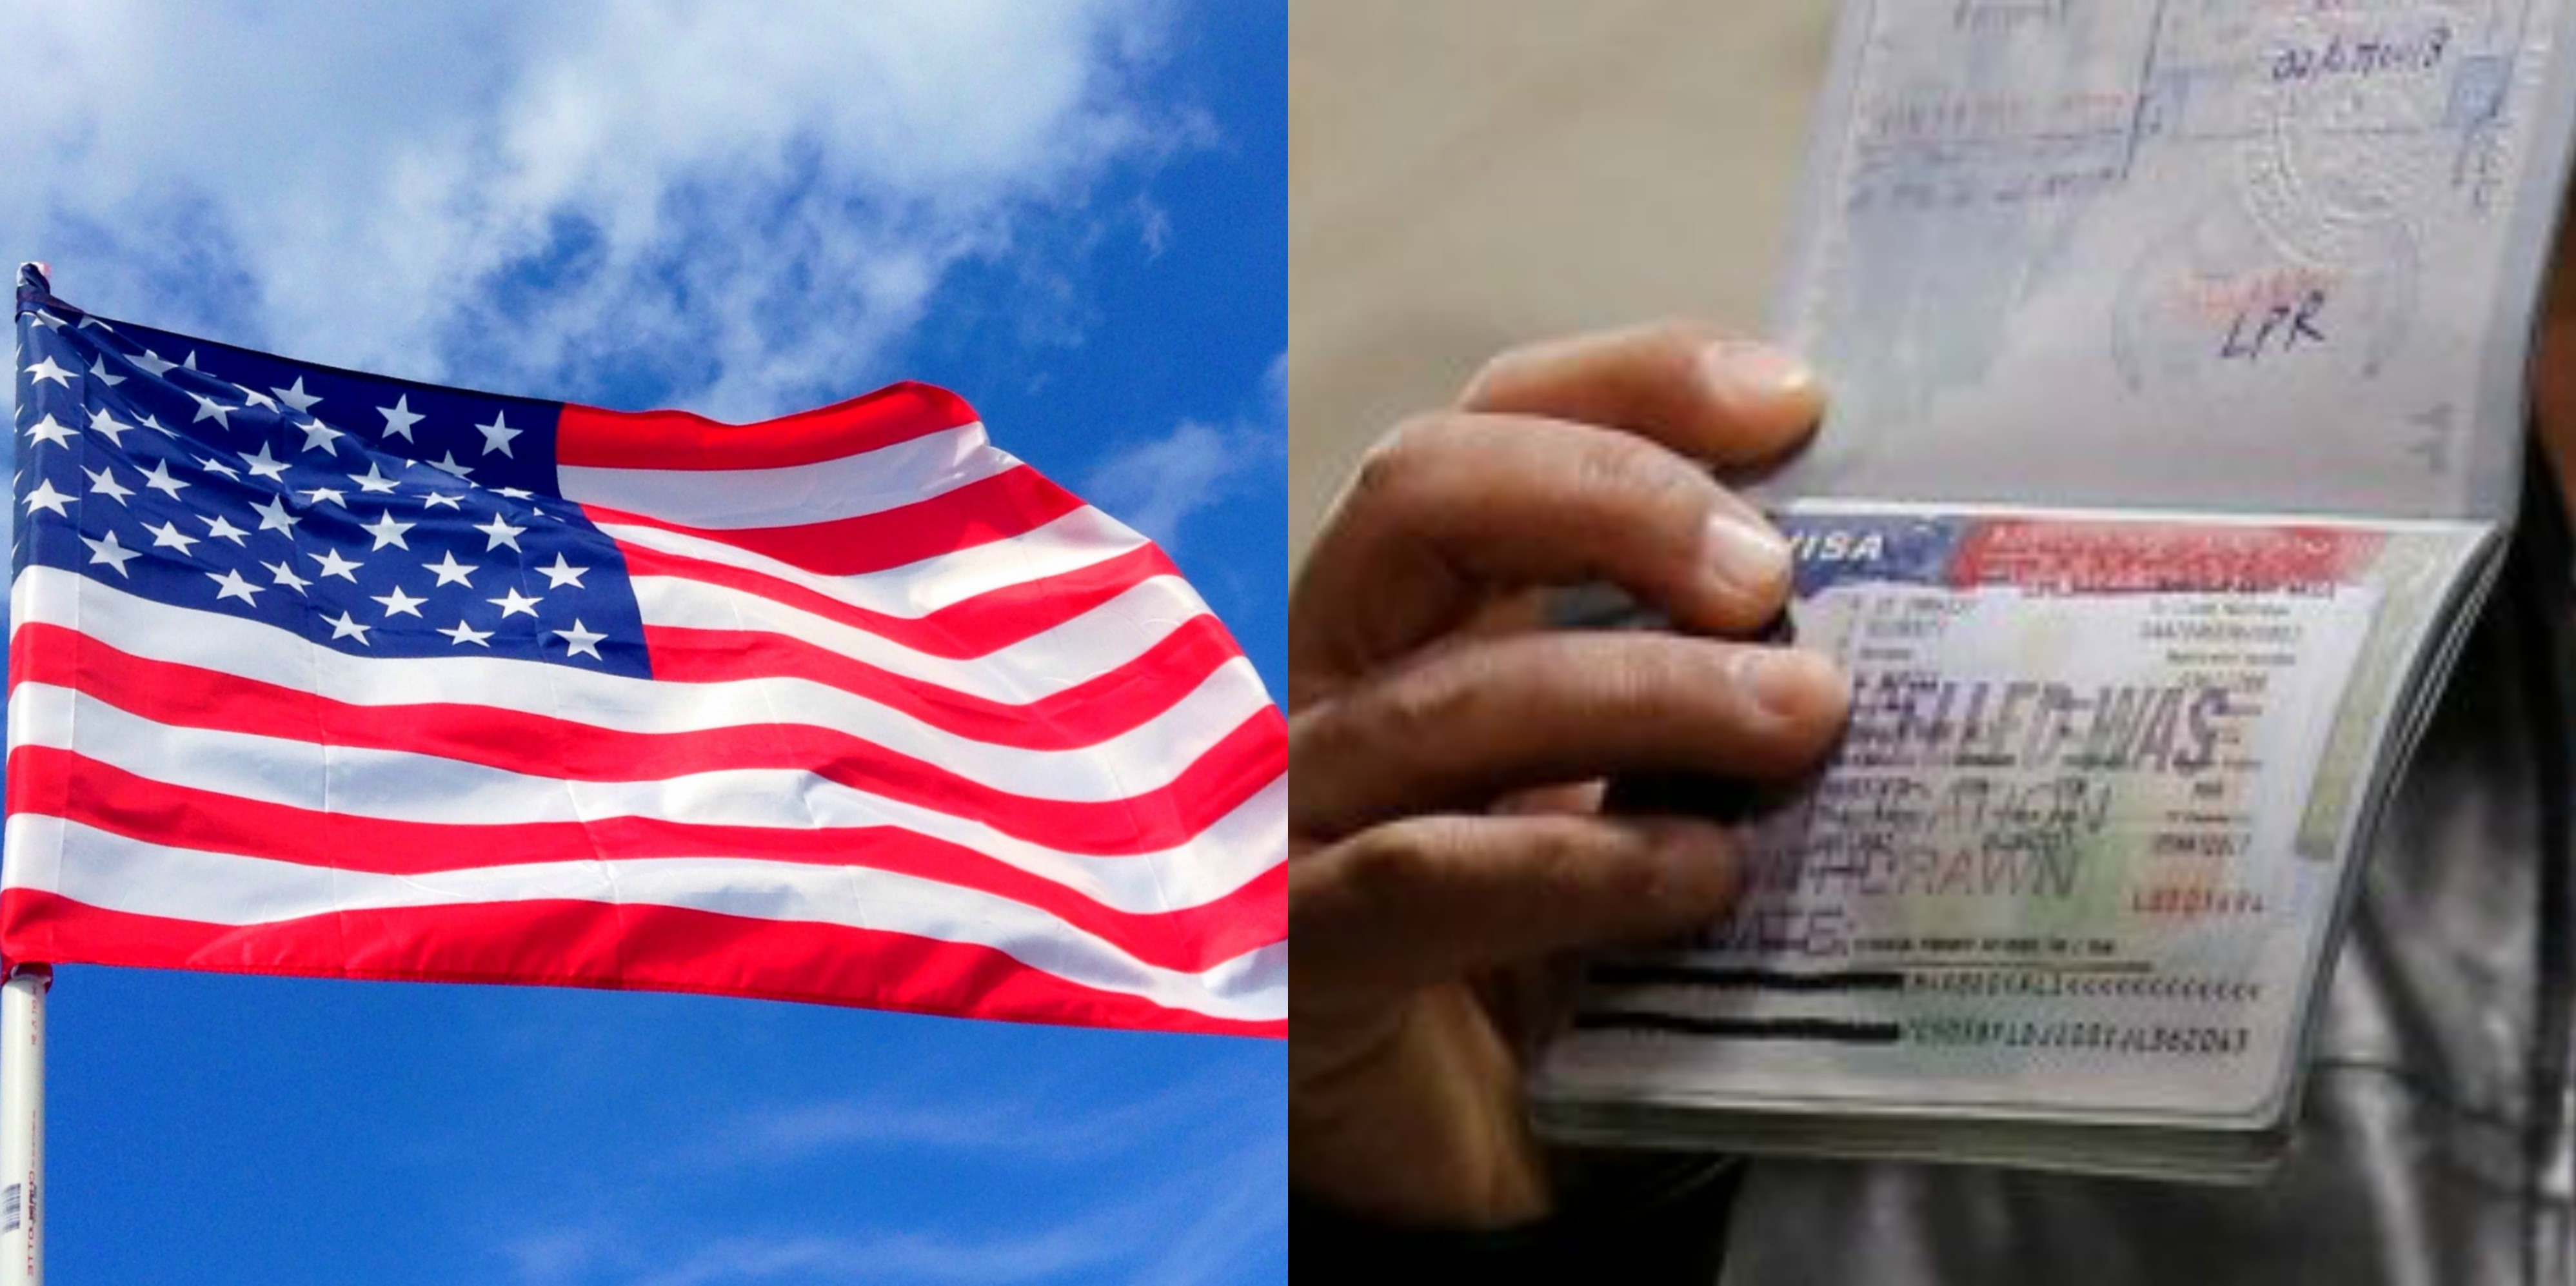 Plan Untuk Ke U.S? Takut ‘Sangkut’? Ini Tips Paling Mudah Untuk Dapatkan Visa